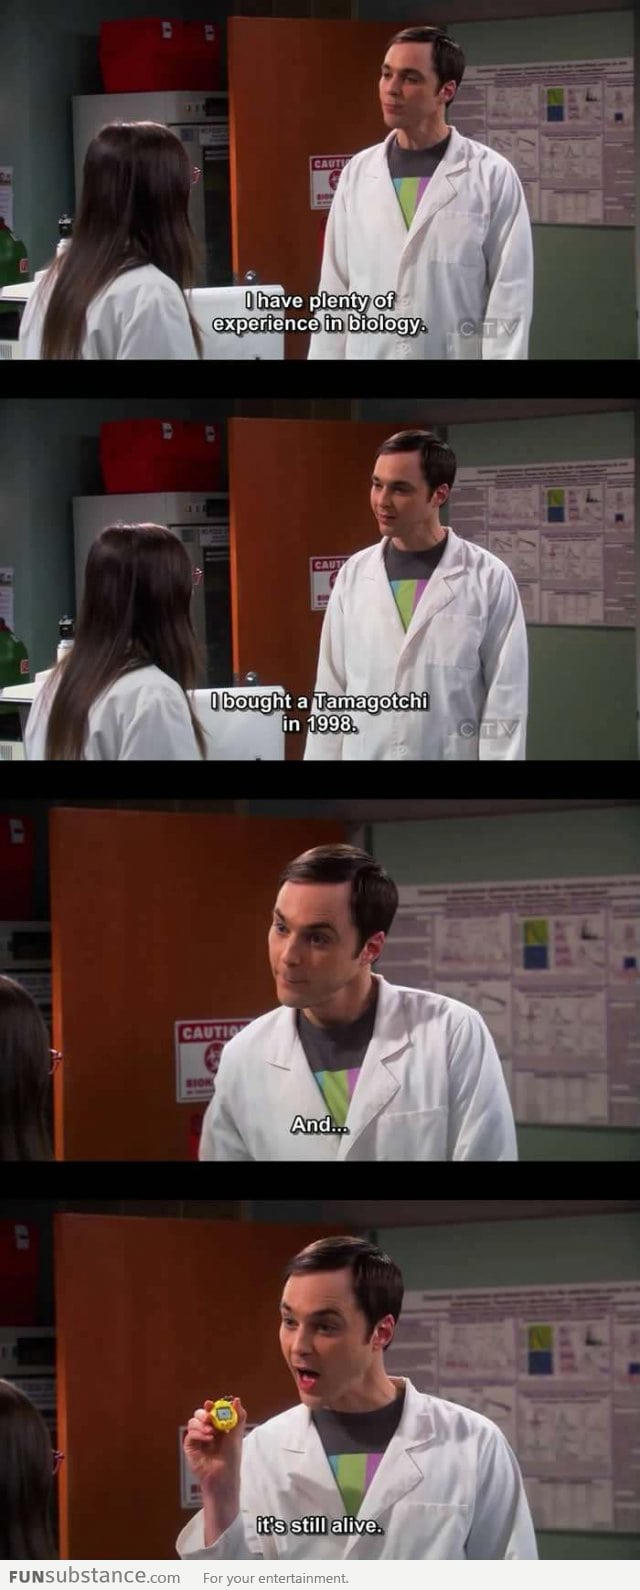 Sheldon has plenty of experience in biology